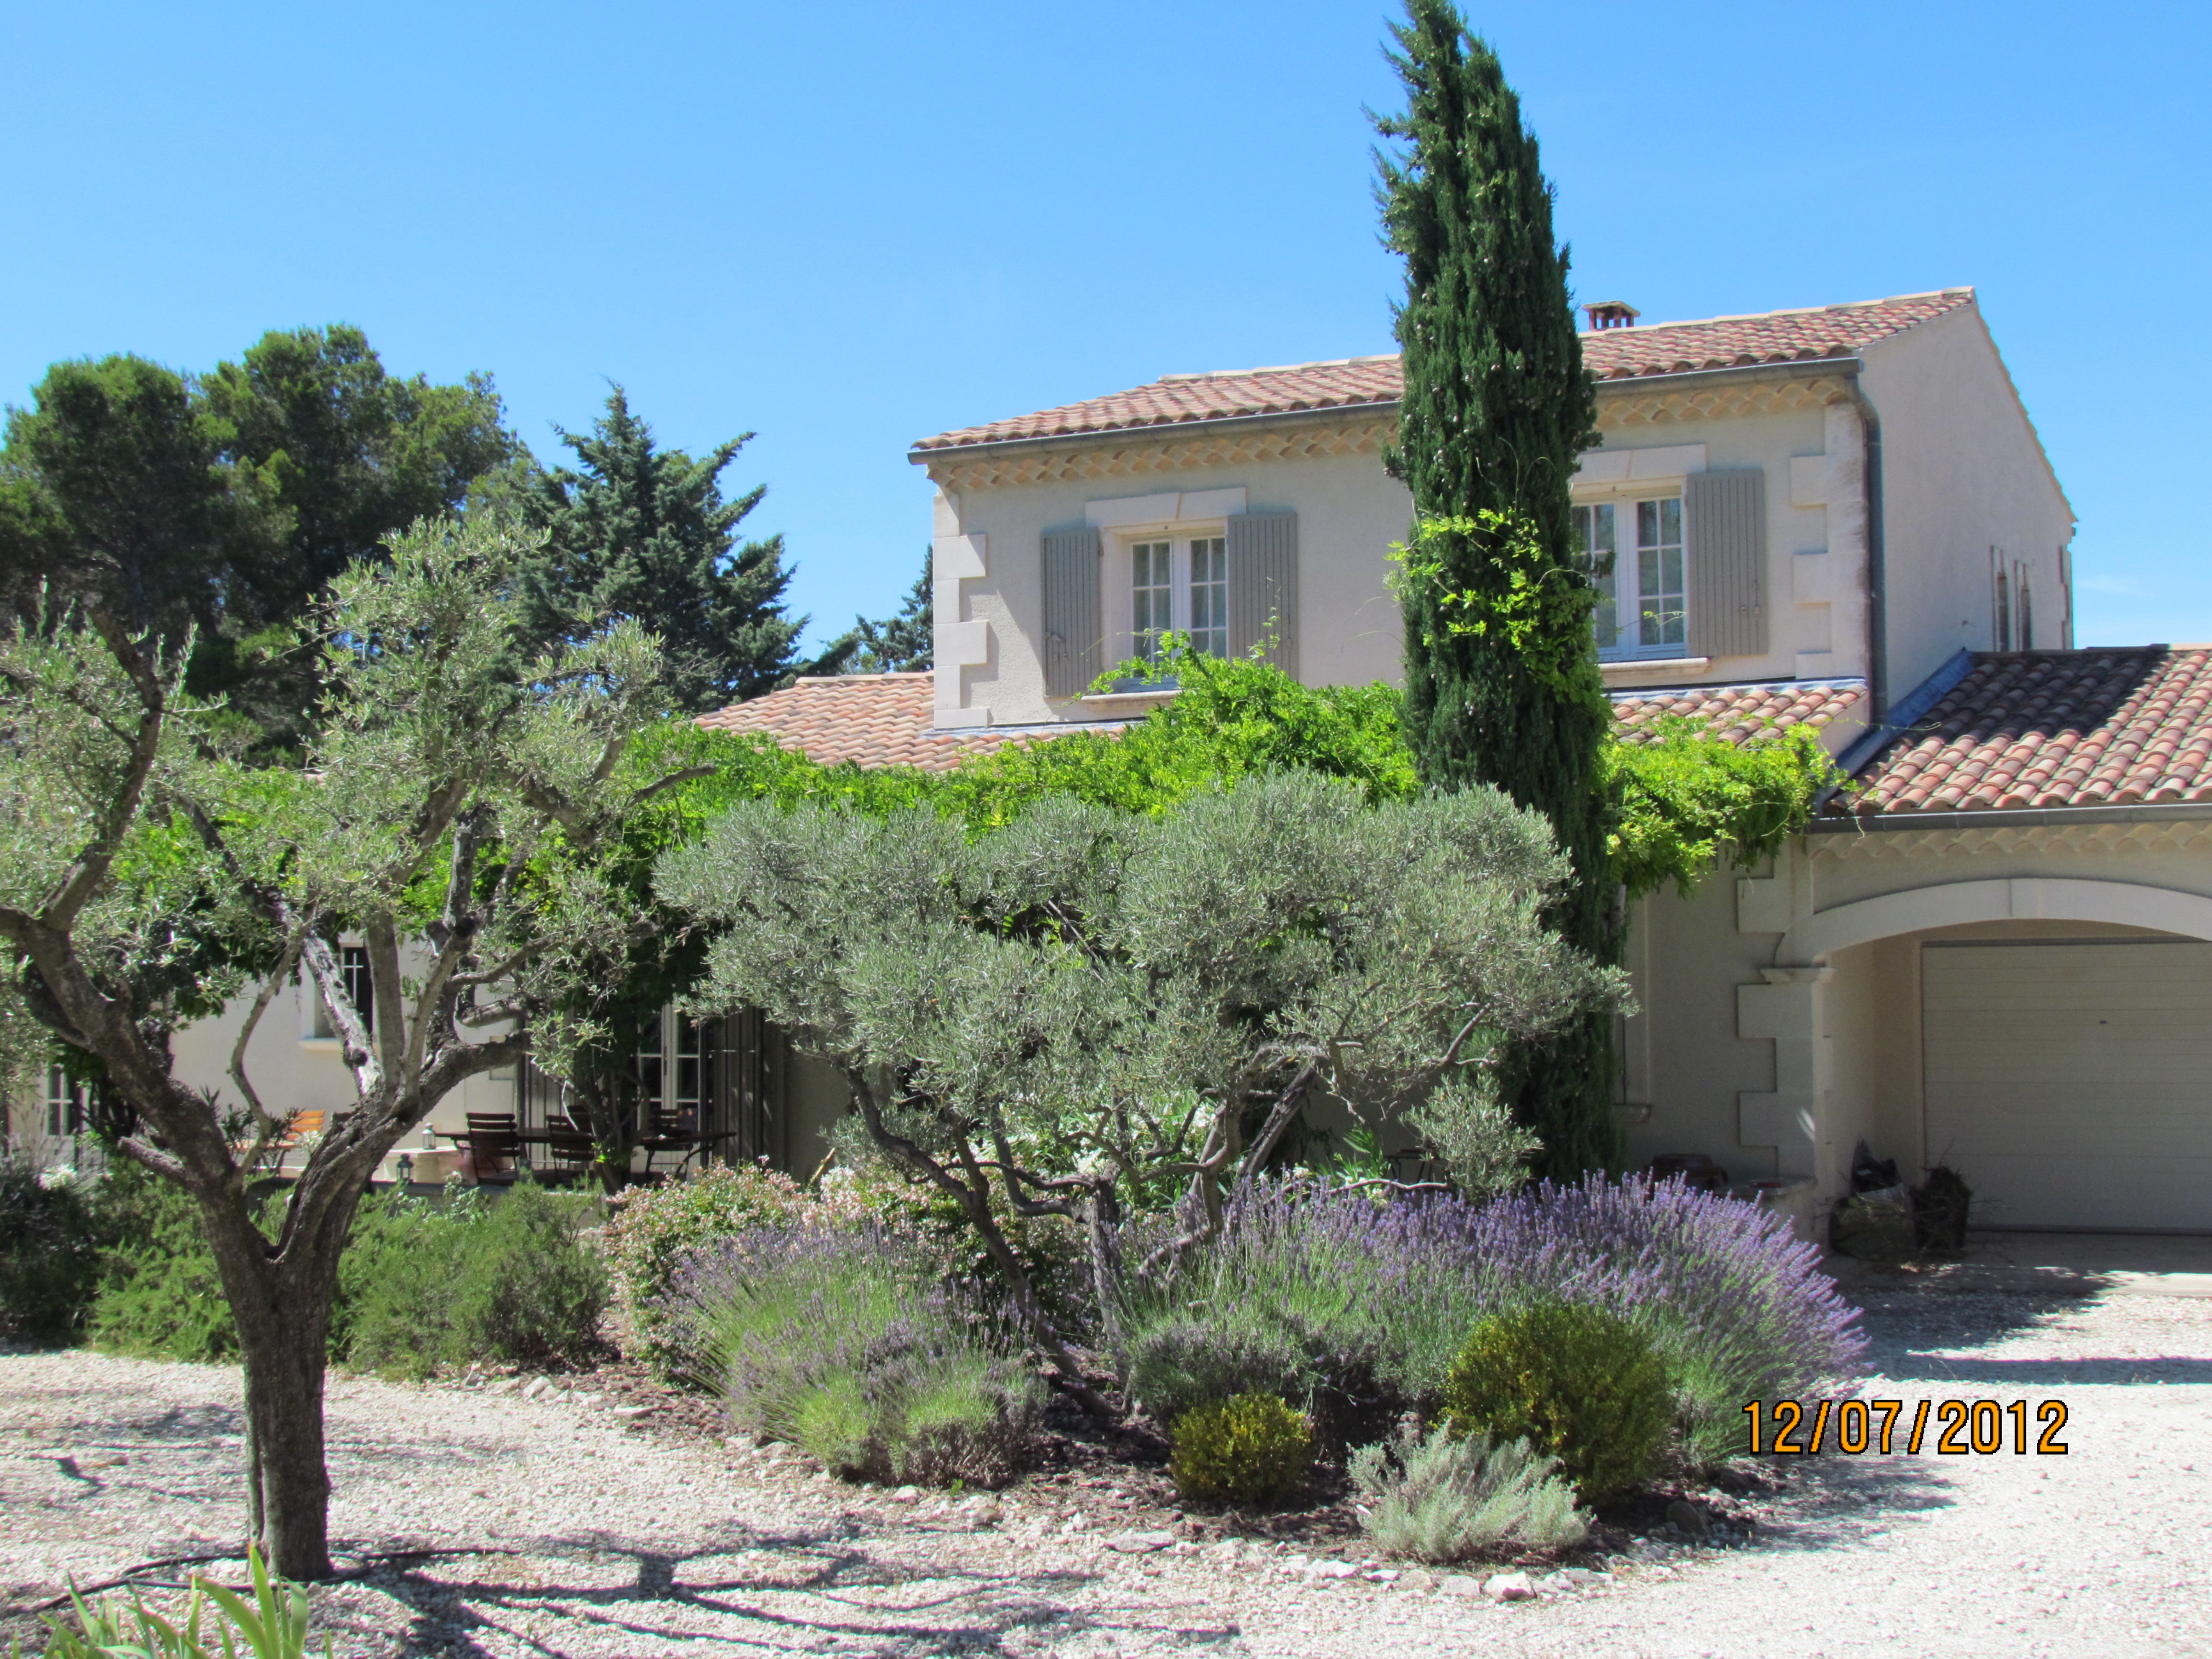 Location saisonniere St Remy de Provence